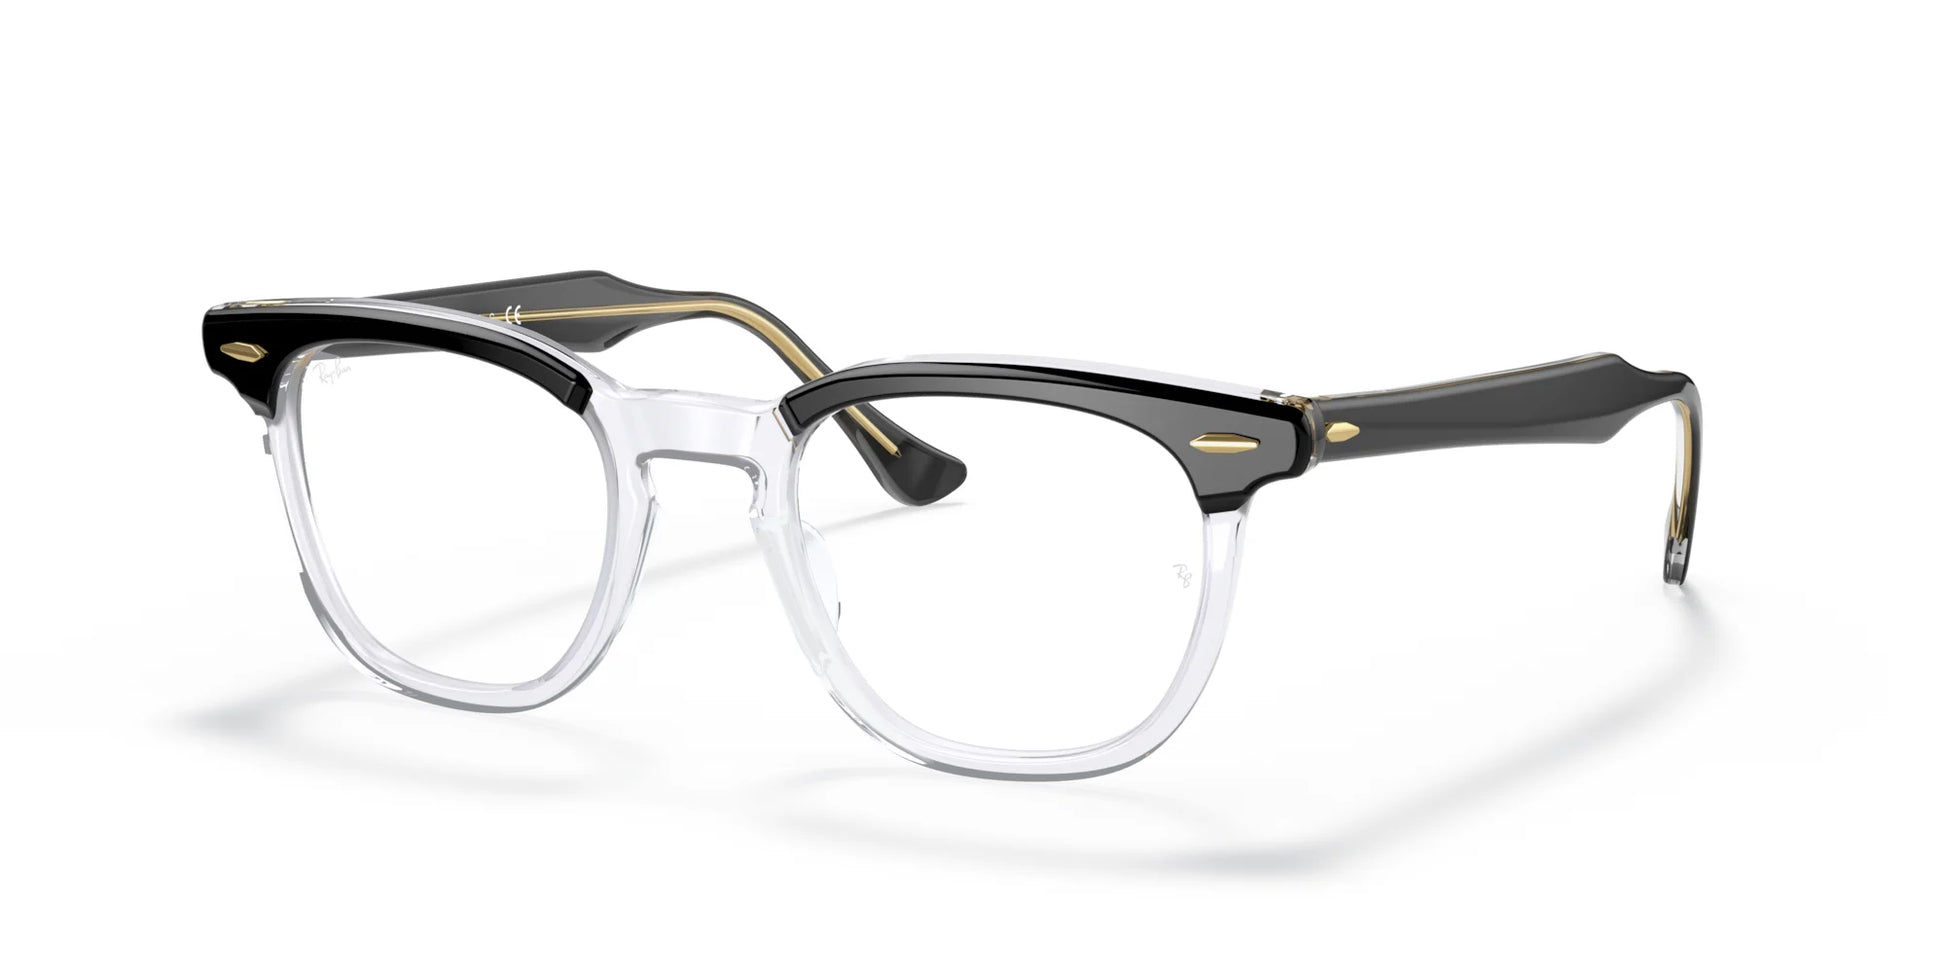 Ray-Ban HAWKEYE RX5398 Eyeglasses Black On Transparent / Clear